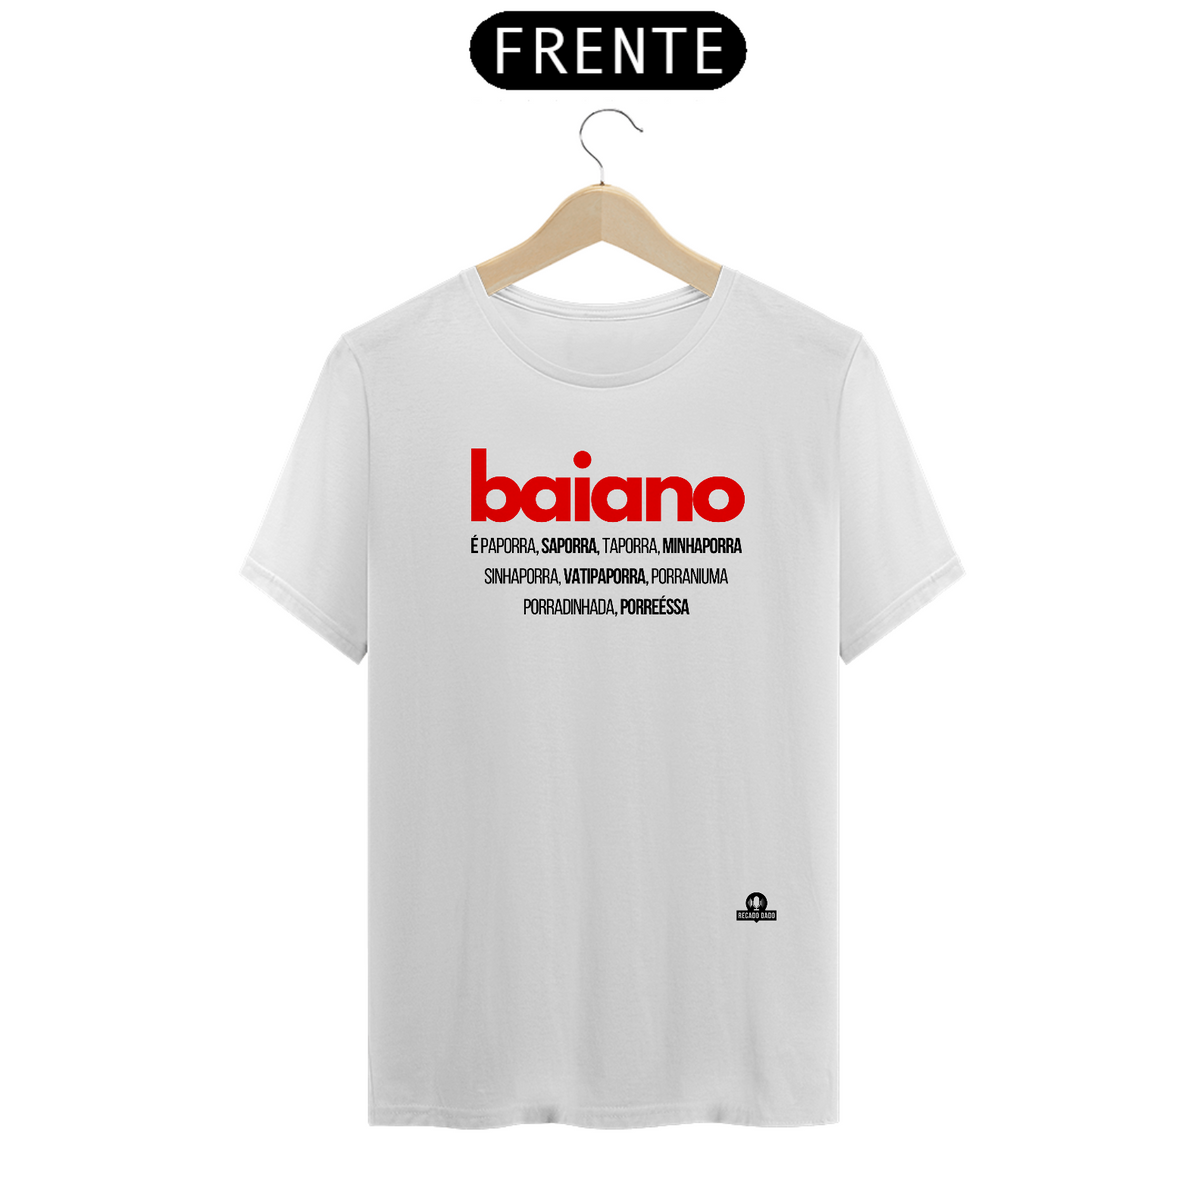 Nome do produto: Camiseta da Bahia com as gírias faladas em Salvador.